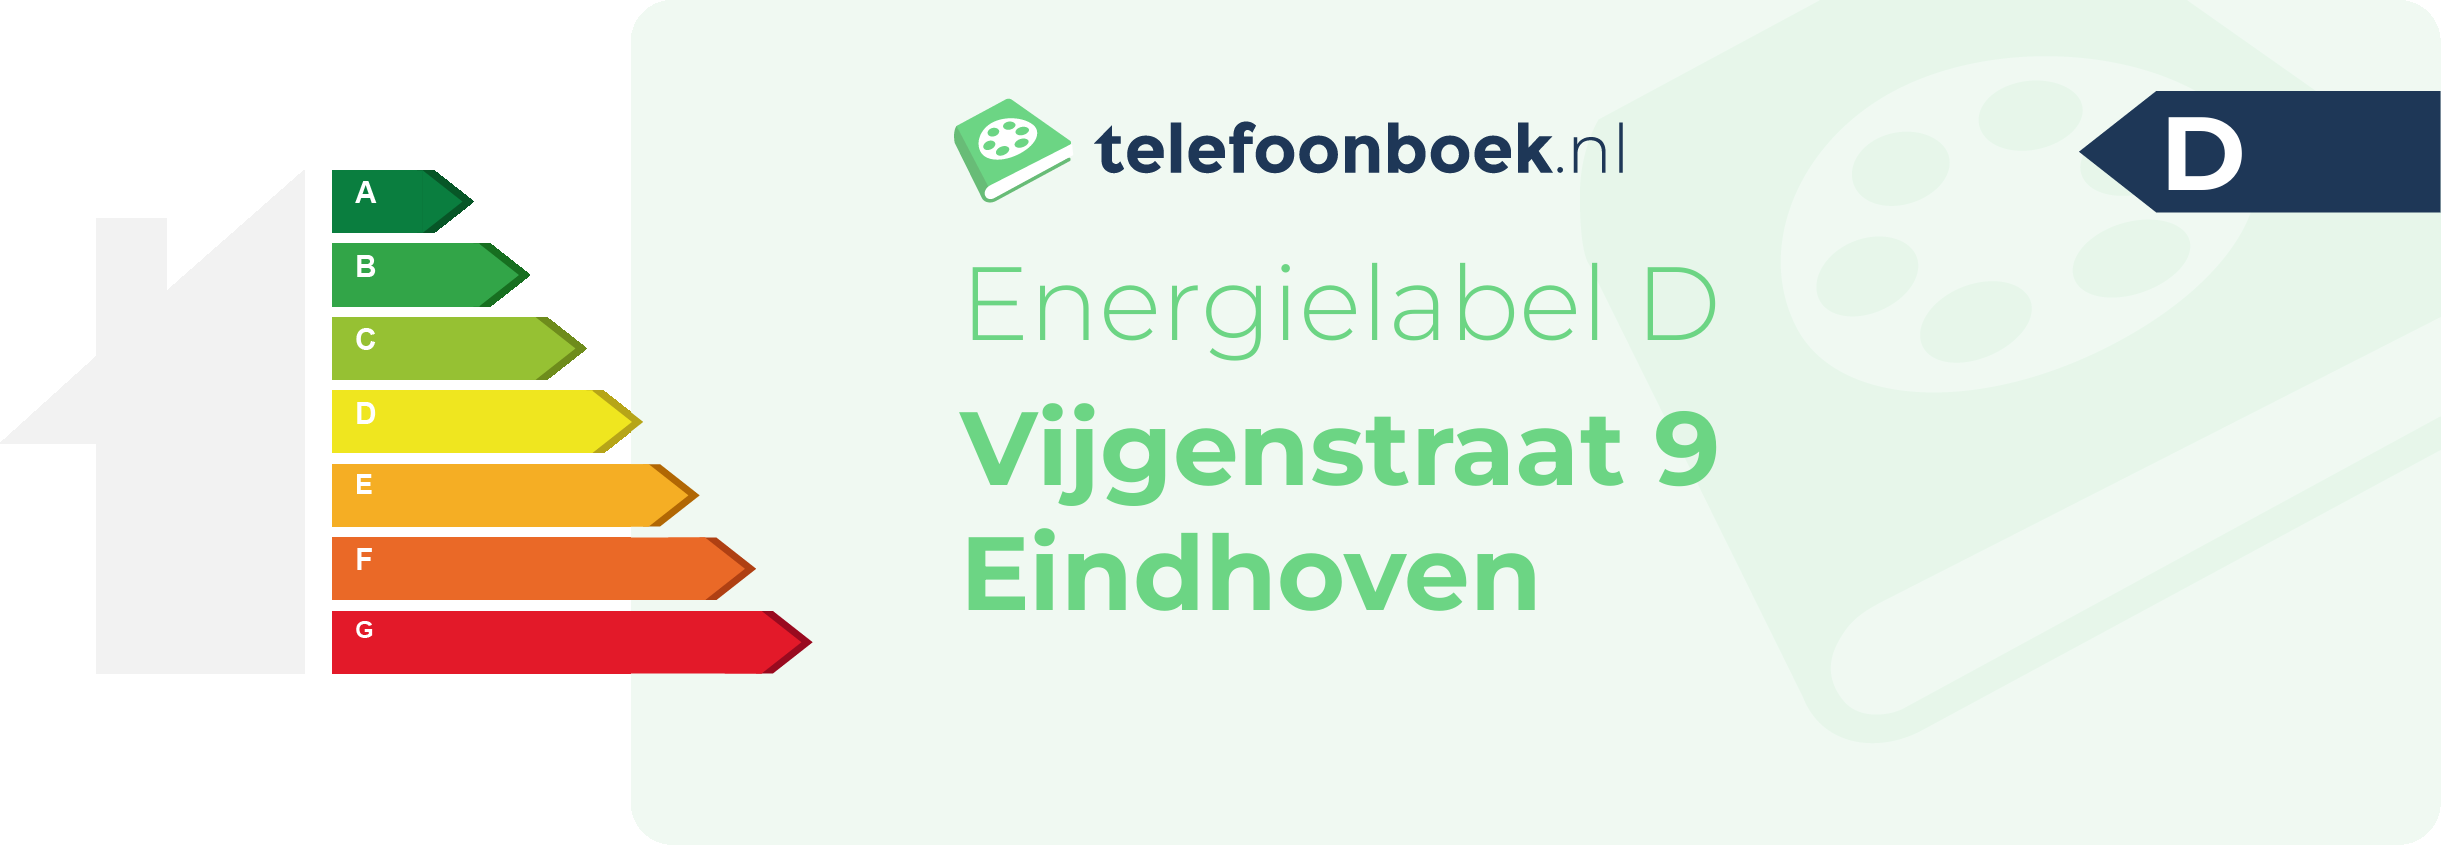 Energielabel Vijgenstraat 9 Eindhoven